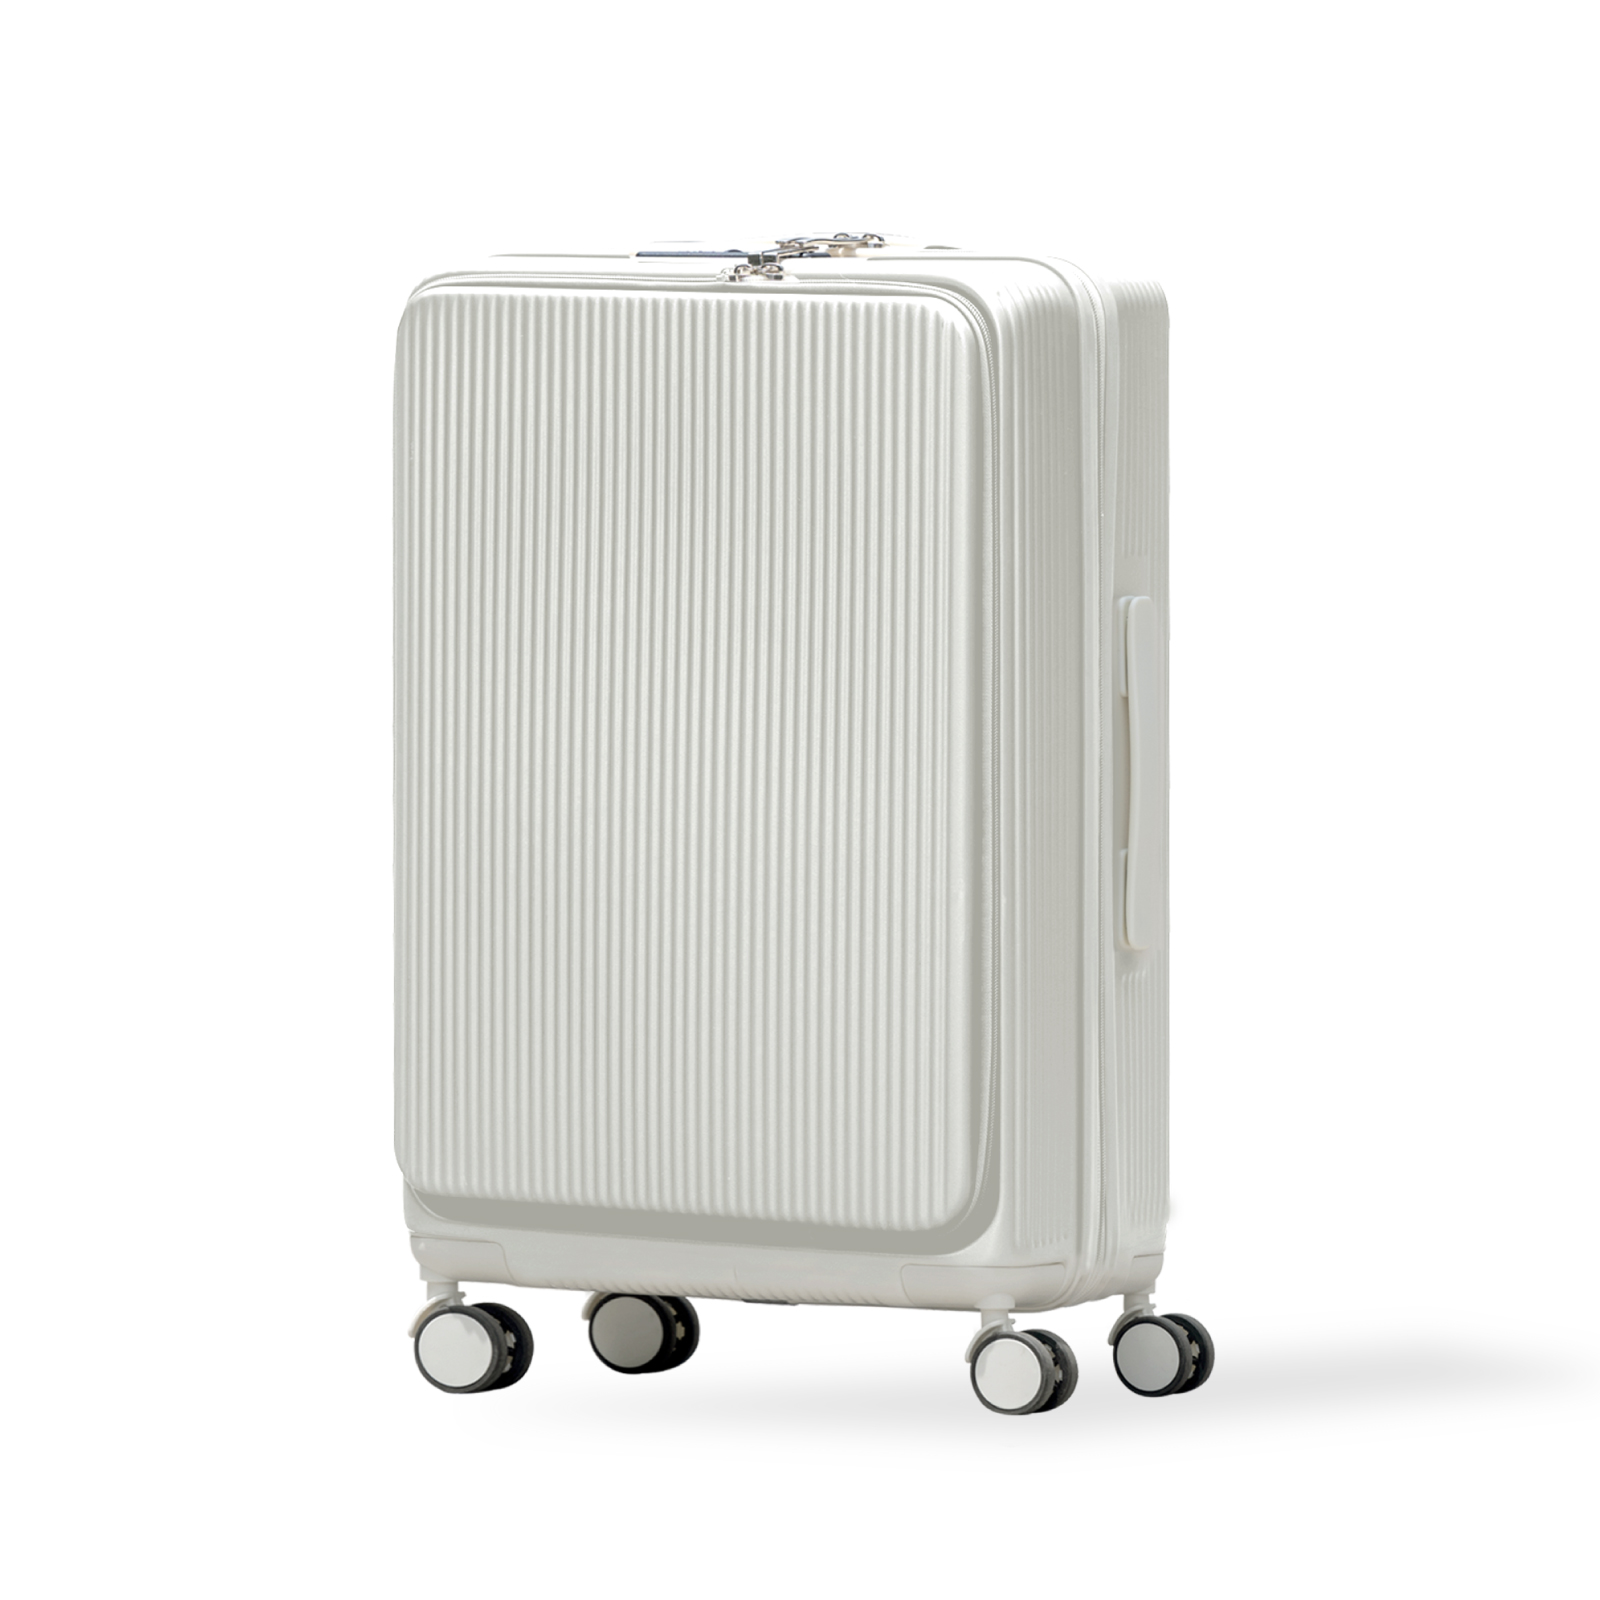 スーツケース 前開き USBポート付き キャリーケース Sサイズ フロントオープン おしゃれ 機内持ち込み 3-5泊用 軽量設計 大容量  多収納ポケット sc178-20